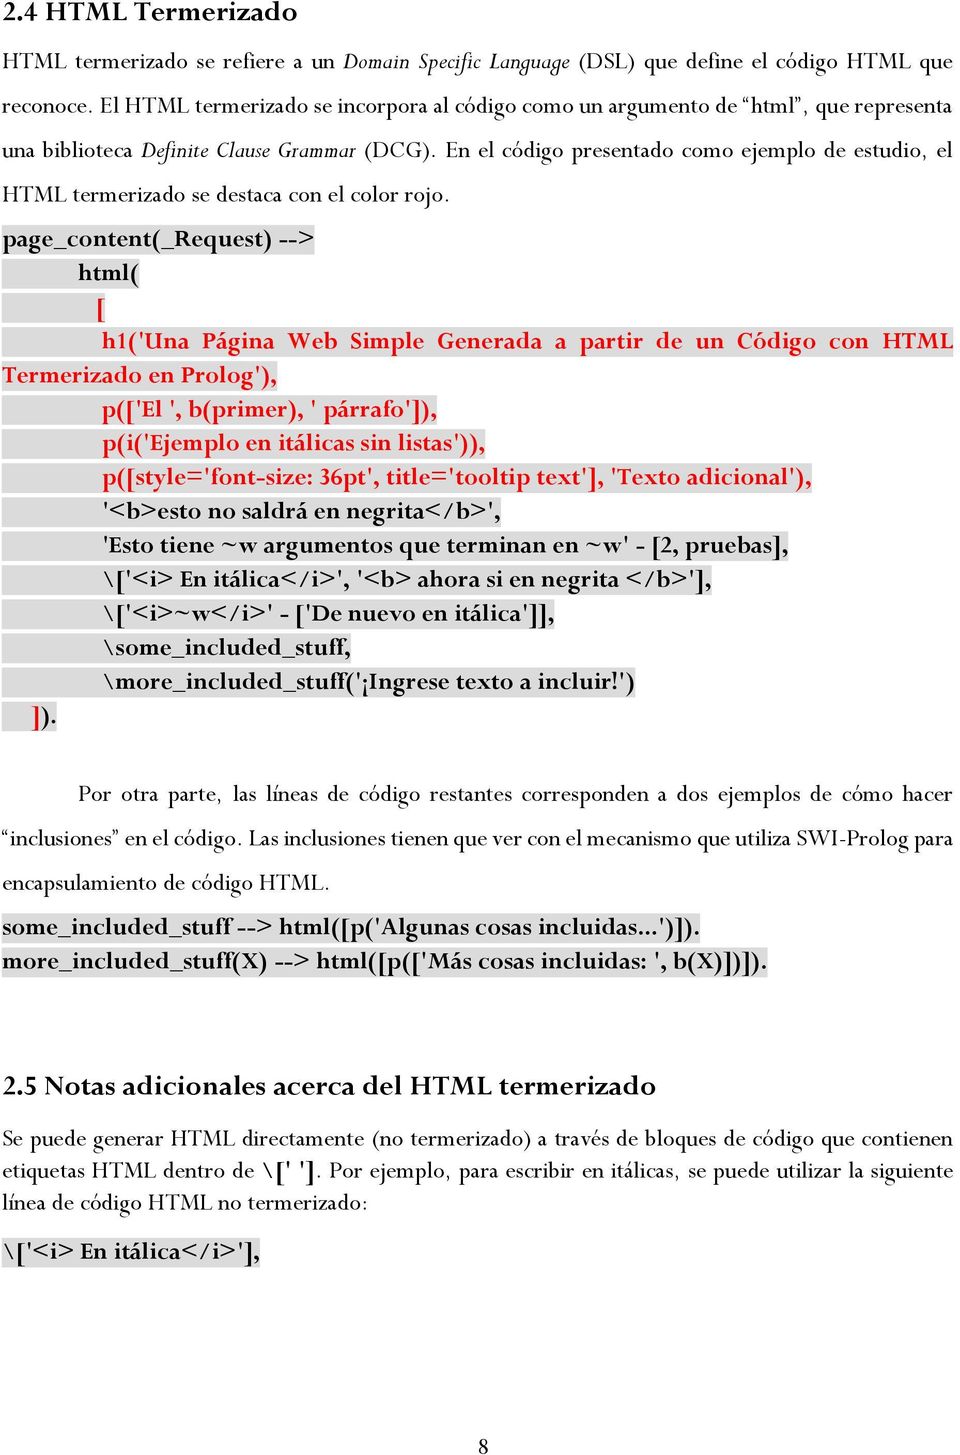 En el código presentado como ejemplo de estudio, el HTML termerizado se destaca con el color rojo.